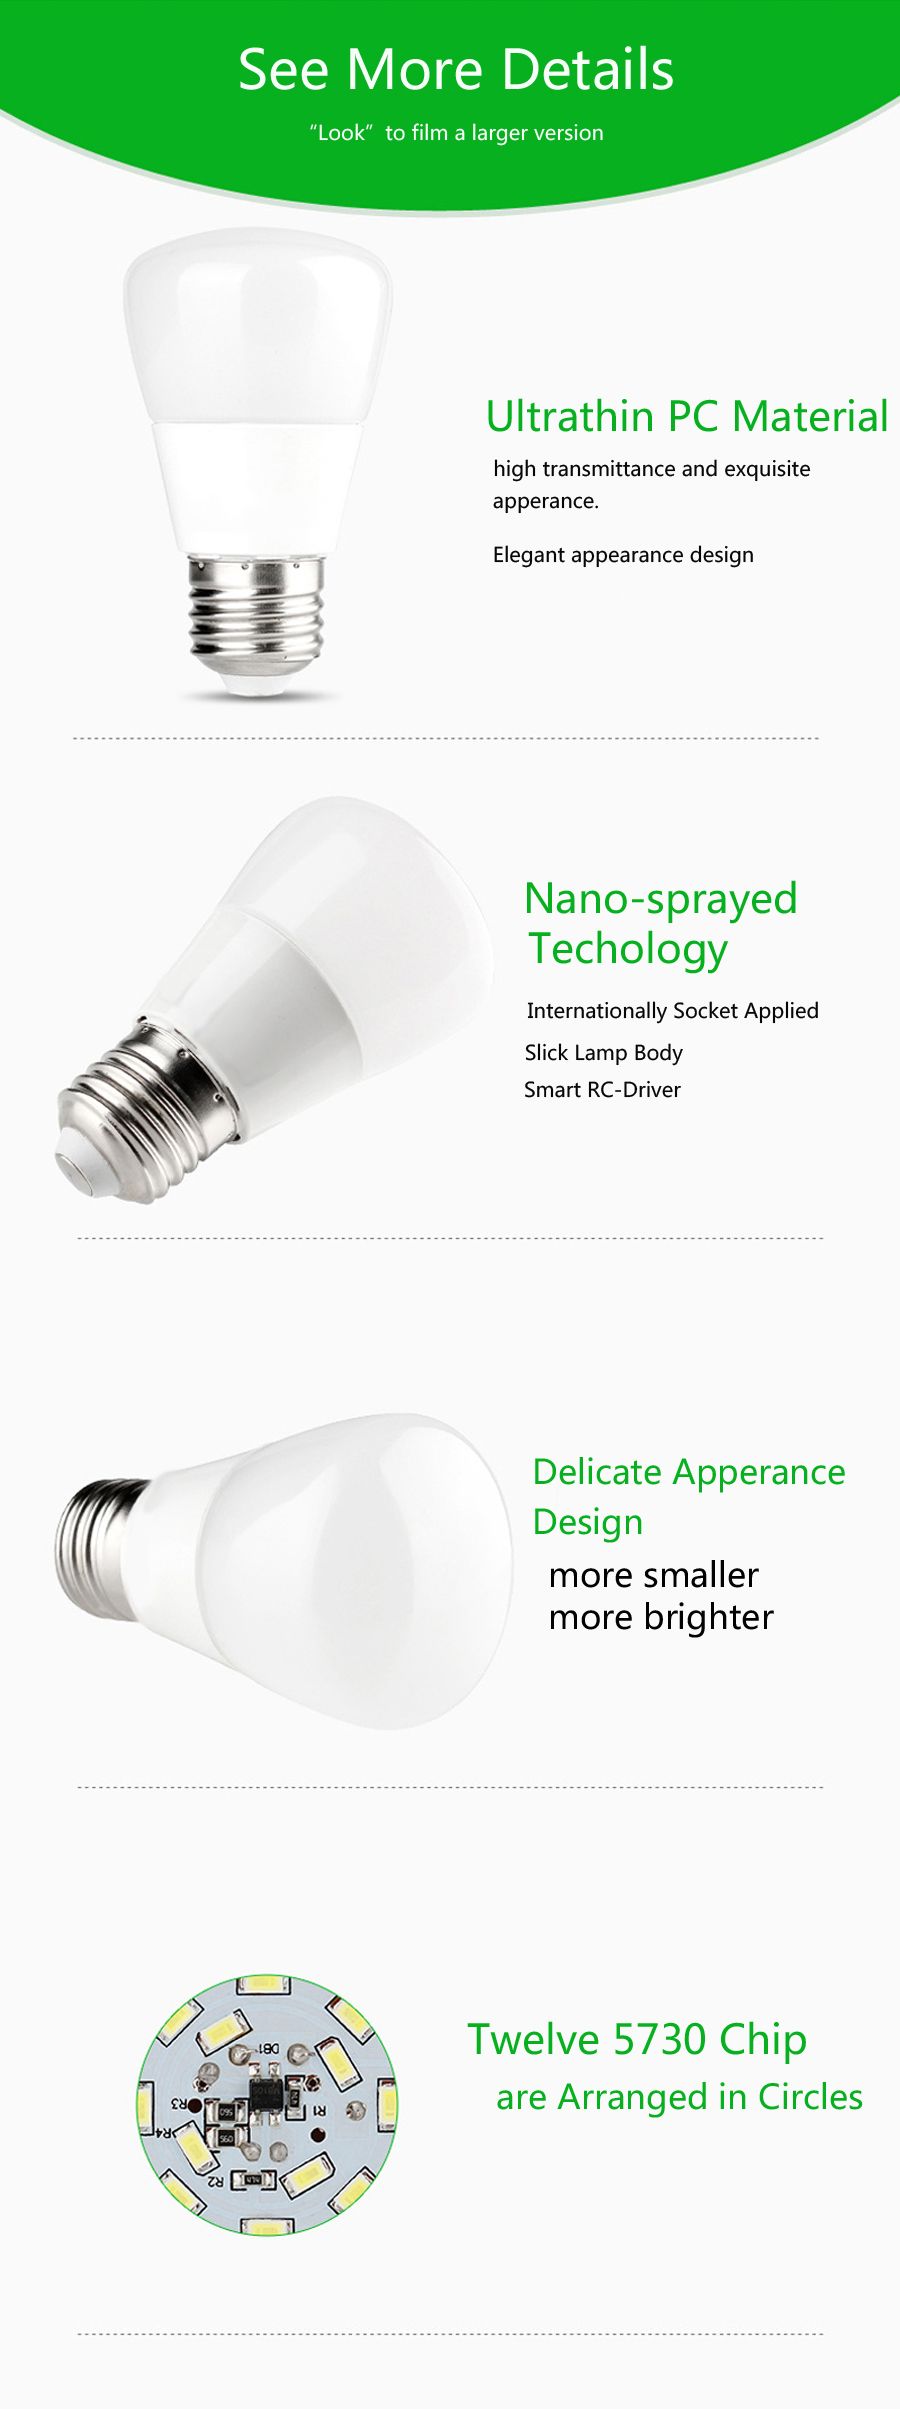 ZX-Newest-E27-5W-SMD-5730-LED-Pure-White-Warm-White-550Lm-Glaze-Light-Lamp-Bulb-AC85-265V-1085728